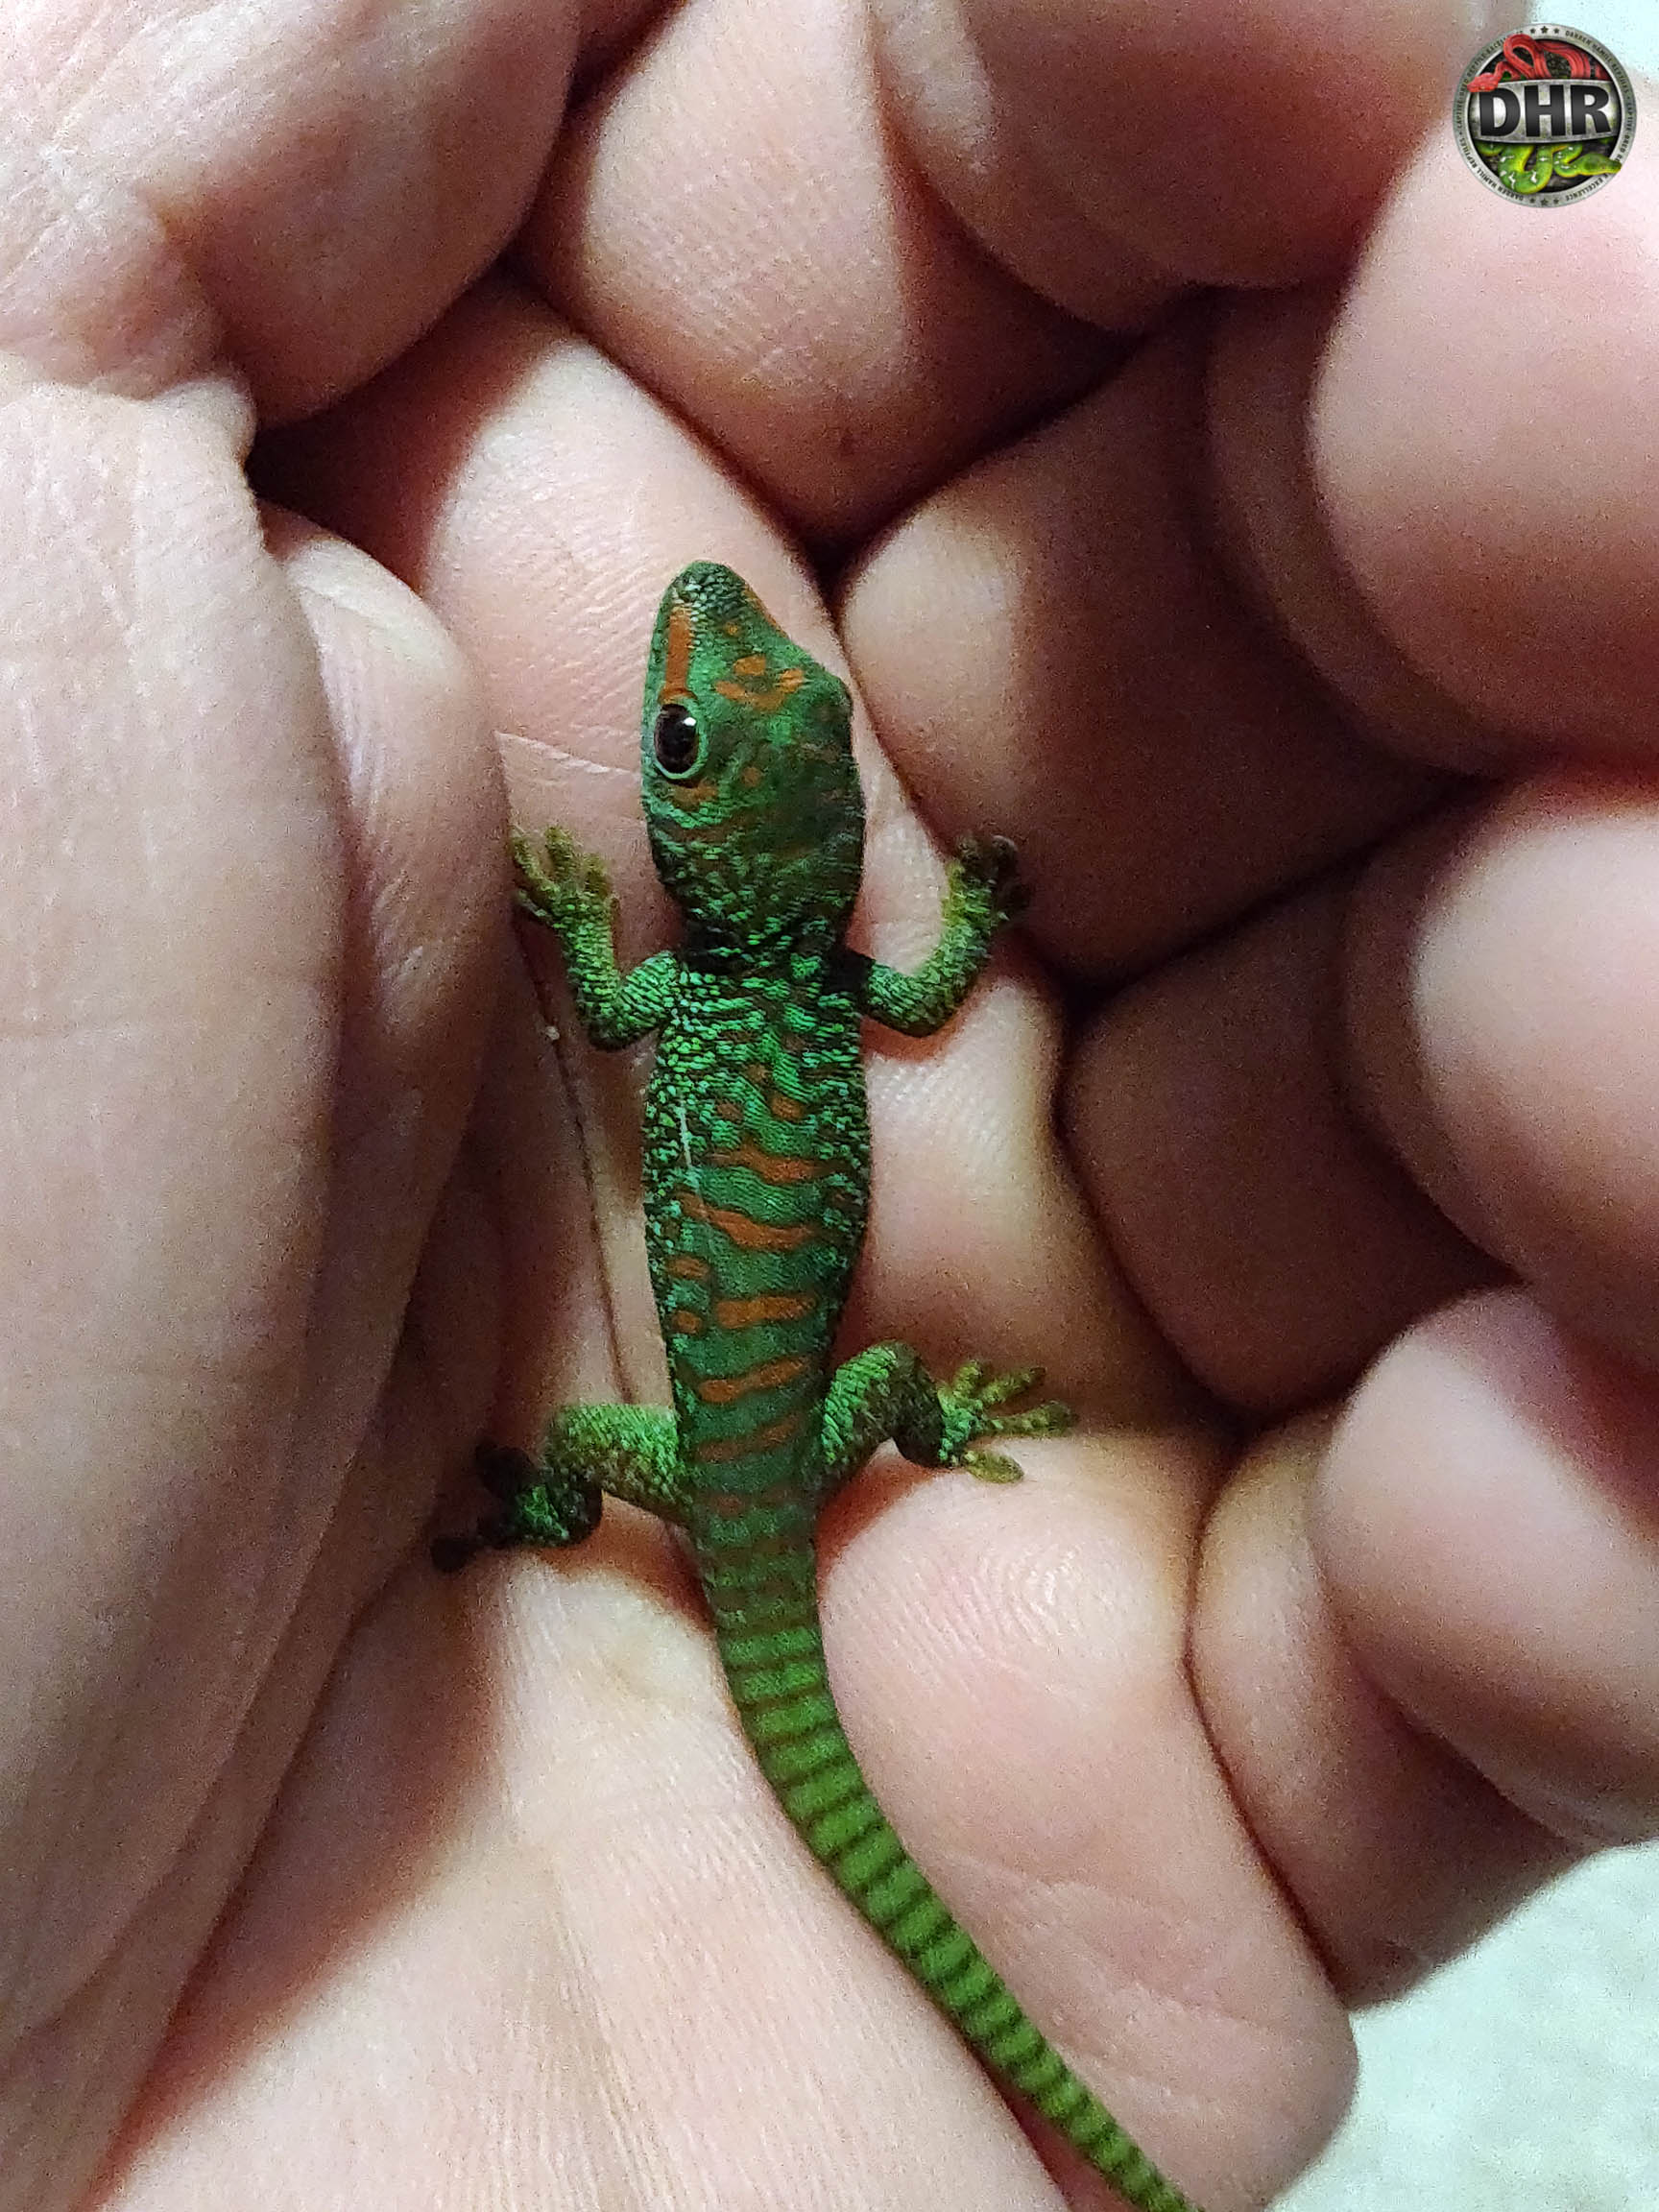 Gecko season has begun!